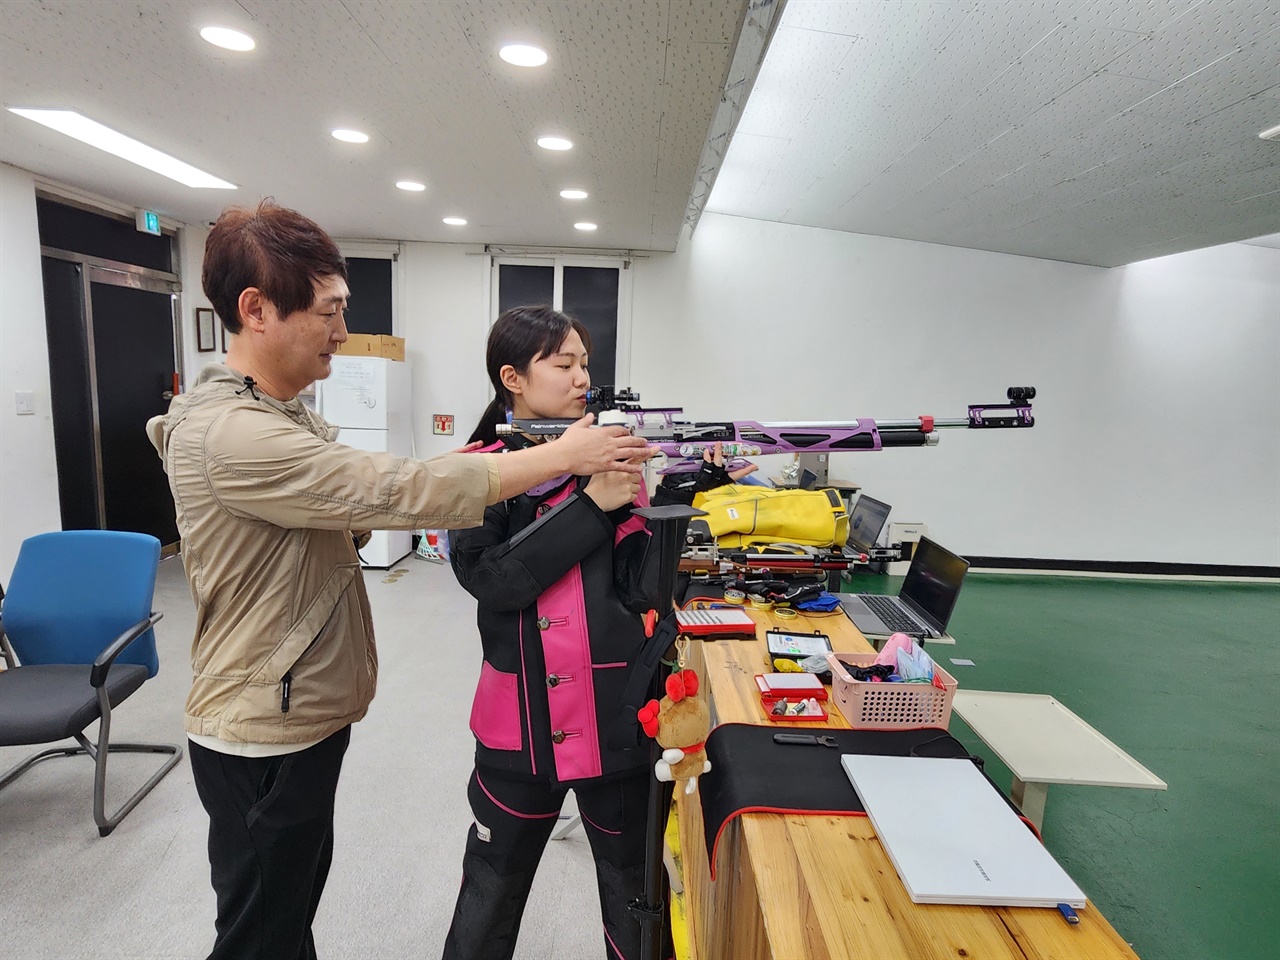 김현호 코치가 박예은 선수의 사격을 지도하는 모습